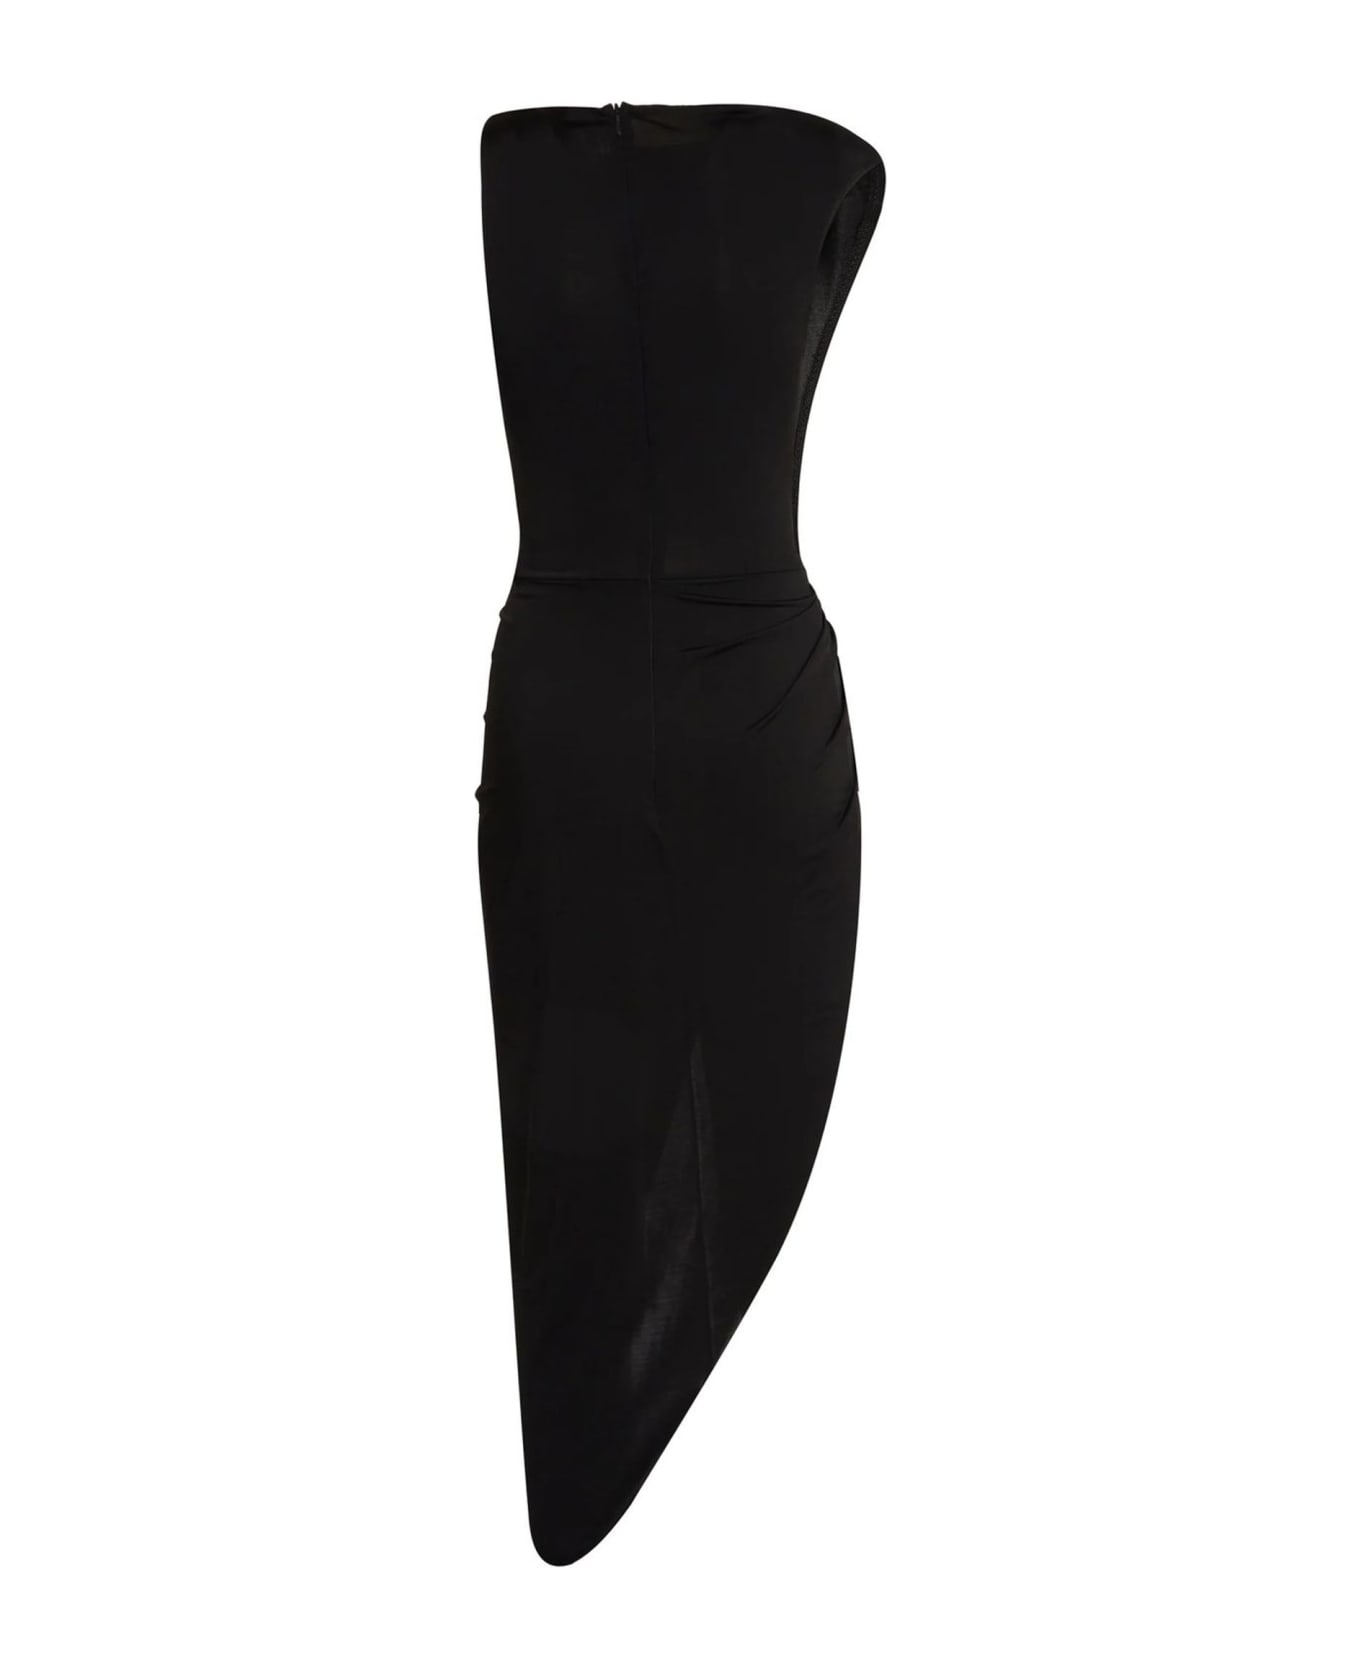 David Koma Dresses Black - BLACK